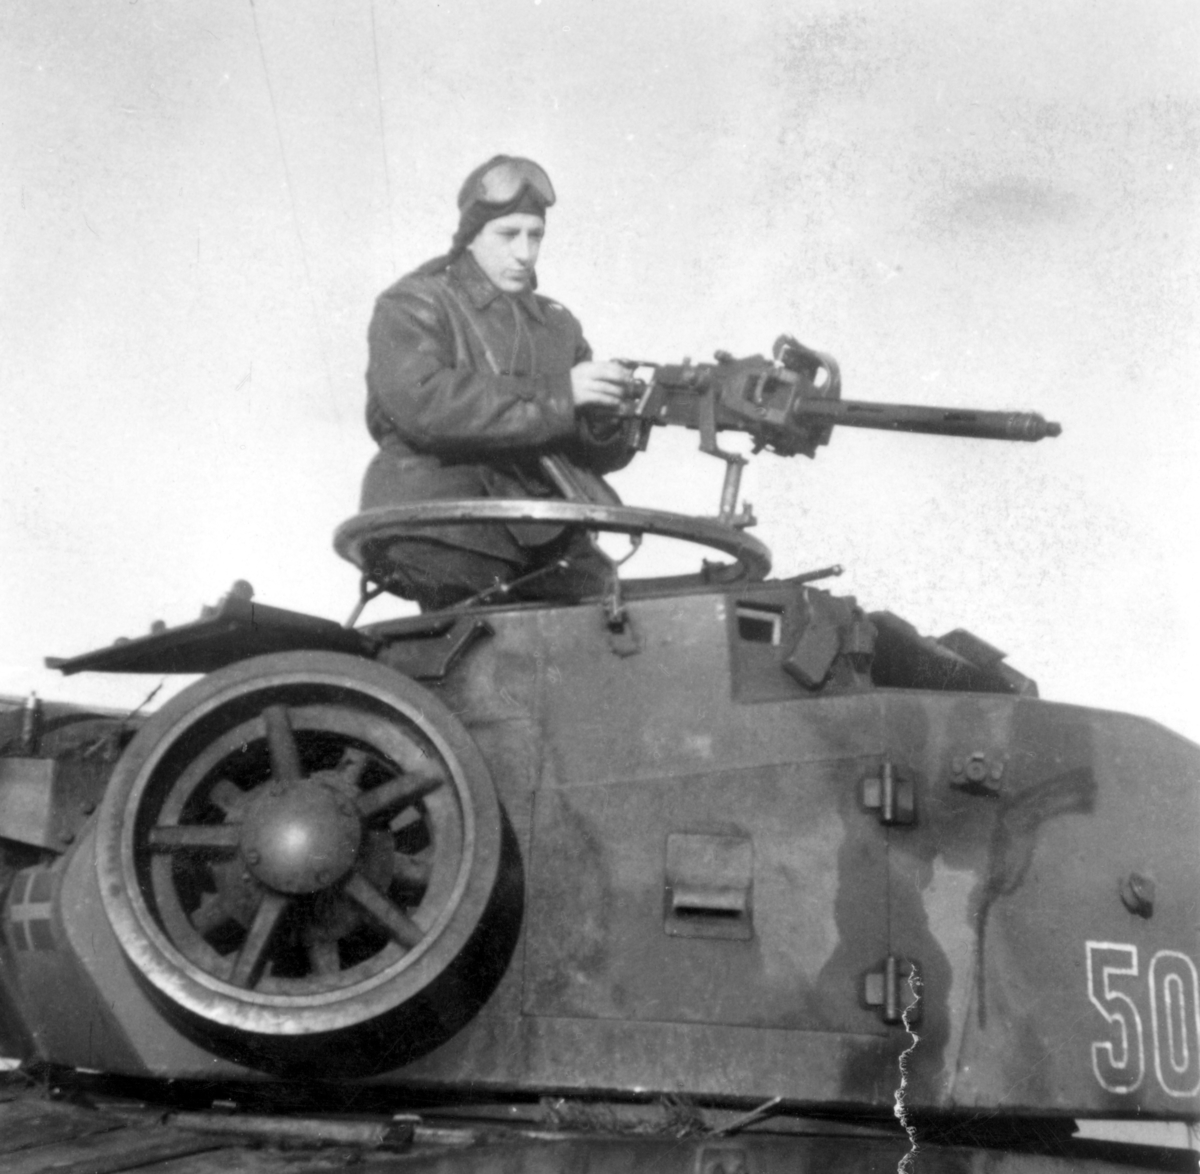 Korpralskoleelev Bergman P3 i tornet på stridsvagn m/42.